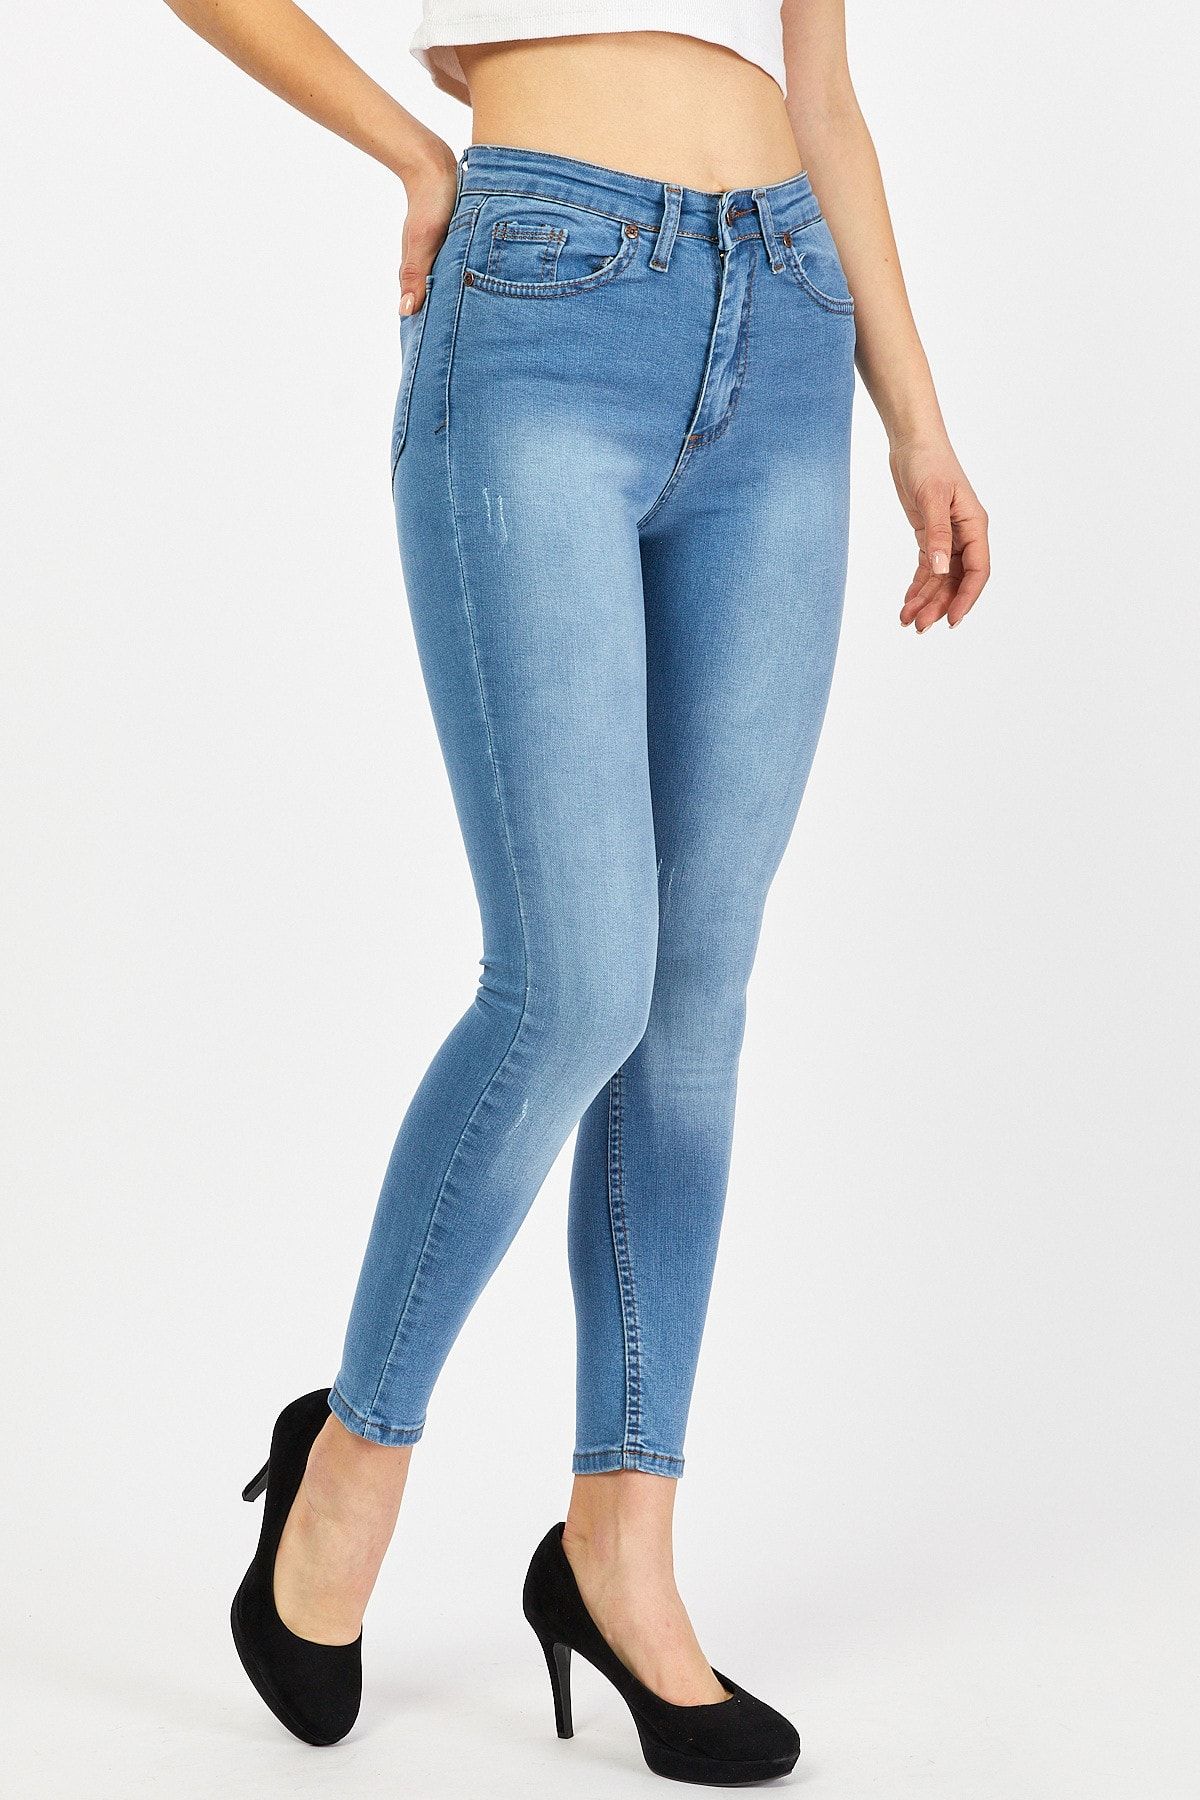 eGs Kadın Yüksek Bel Skinny Tırnaklı Kot Pantolon Açık Mavi